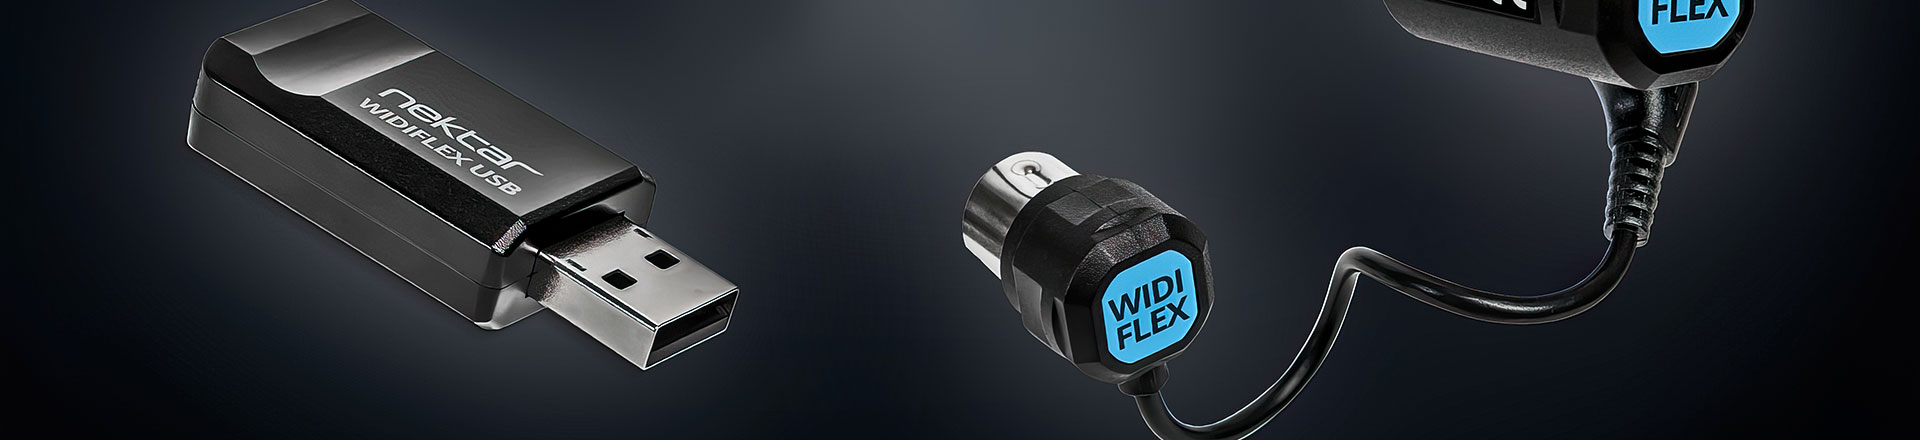 Nektar WIDIFLEX - MIDI bez kabli? A czemu nie?